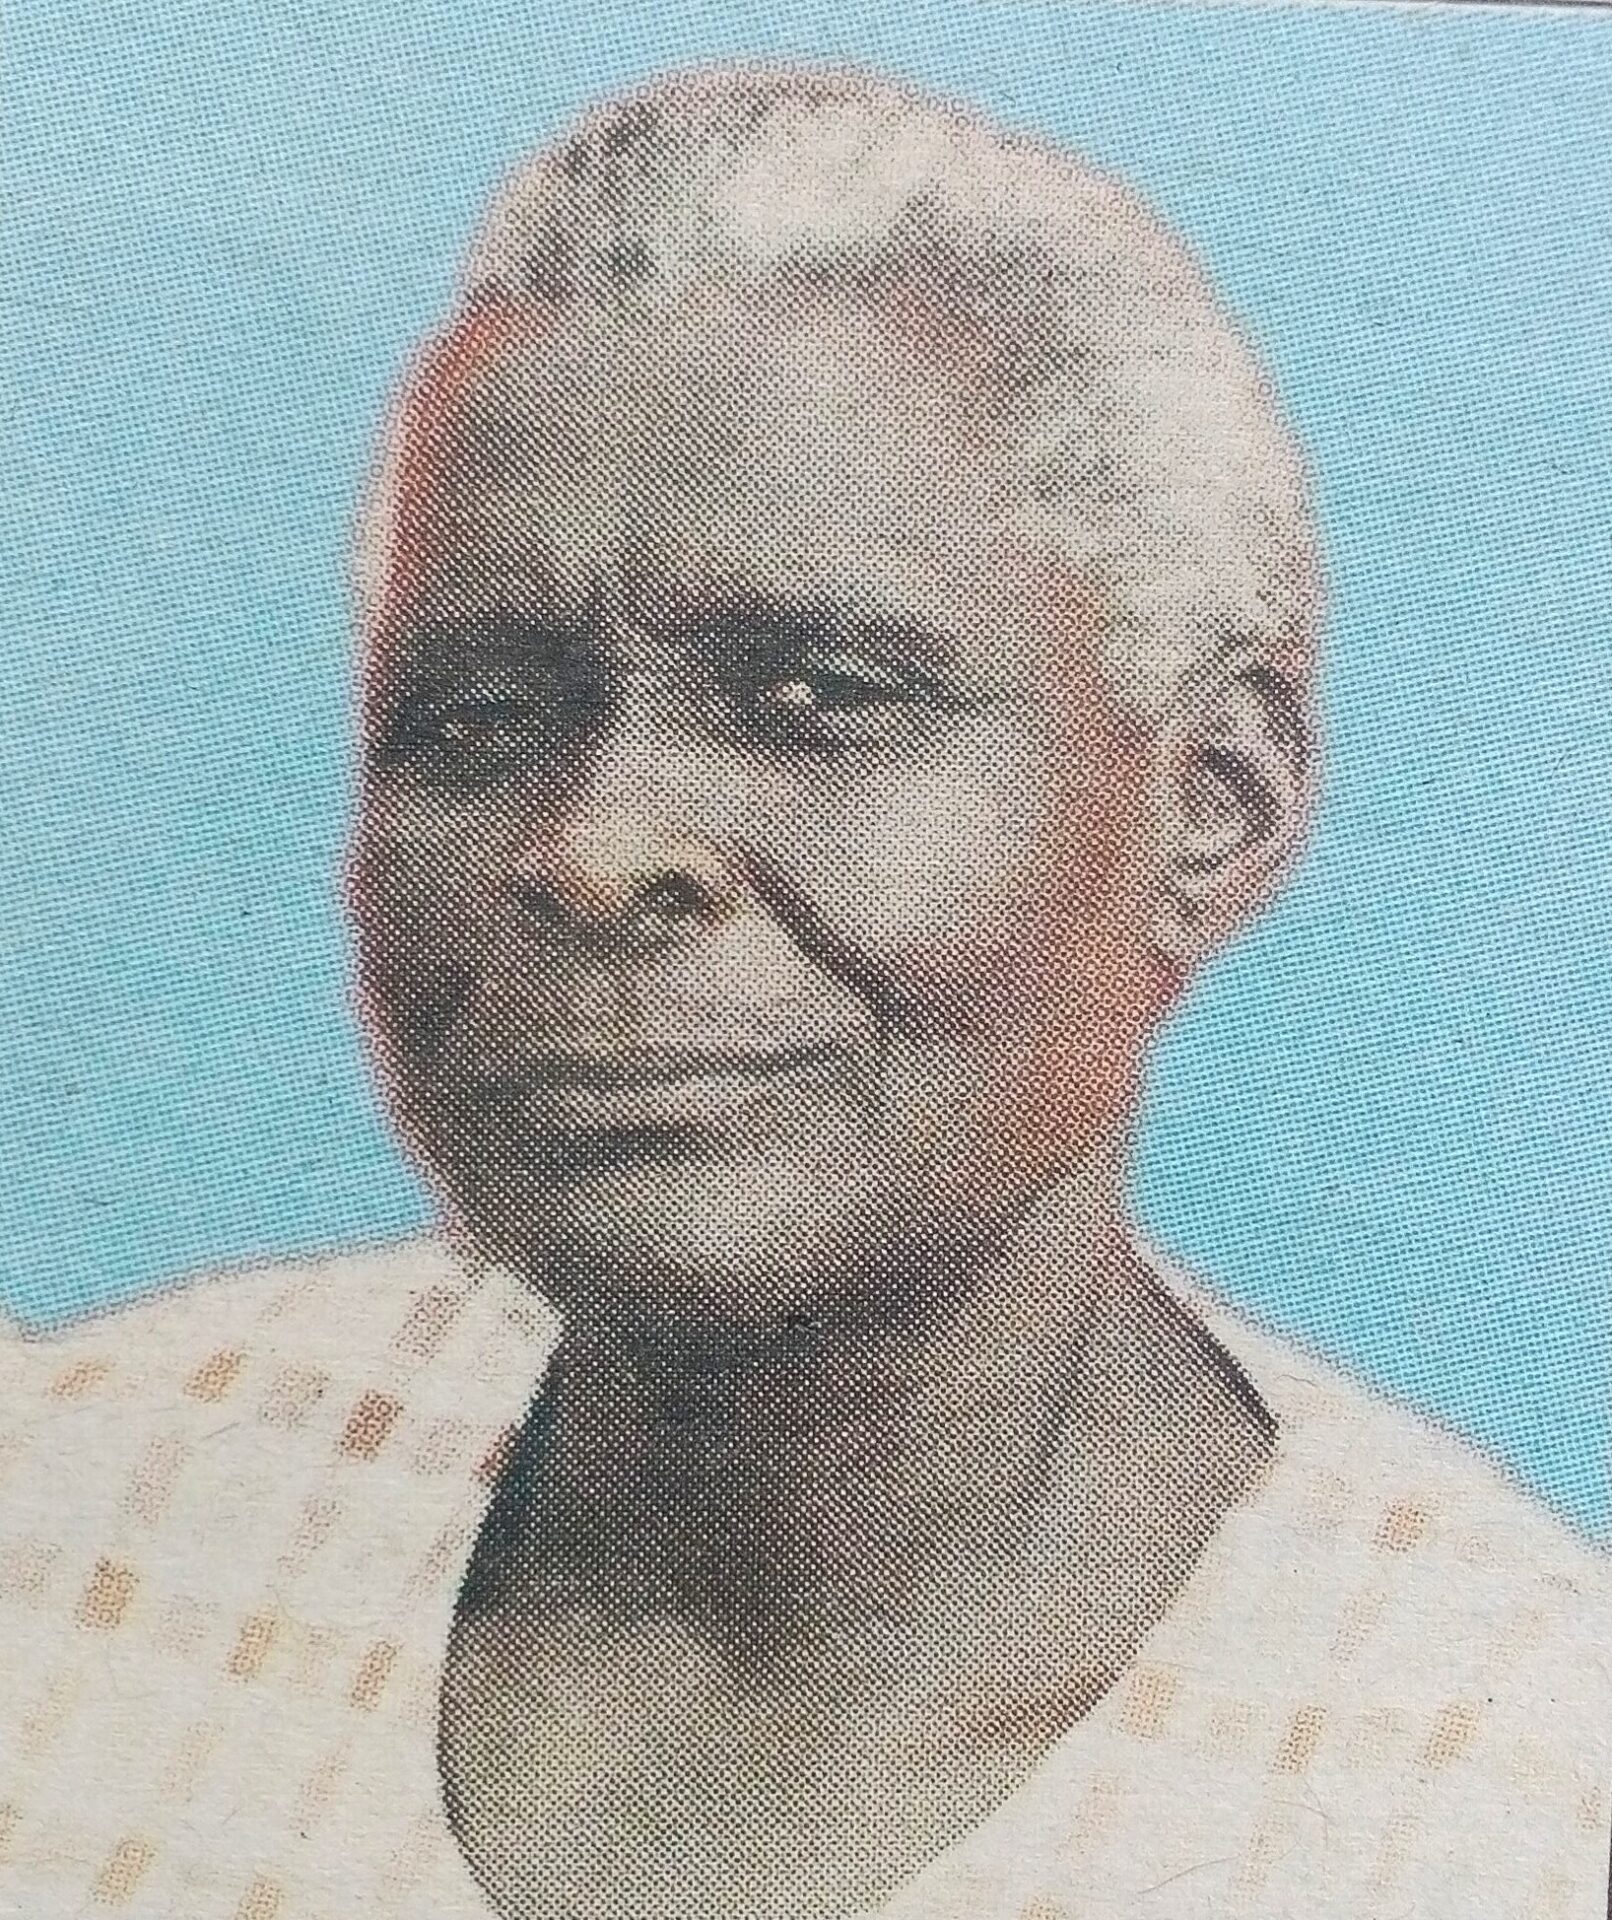 Obituary Image of Mama Rhoda Agumba Olero